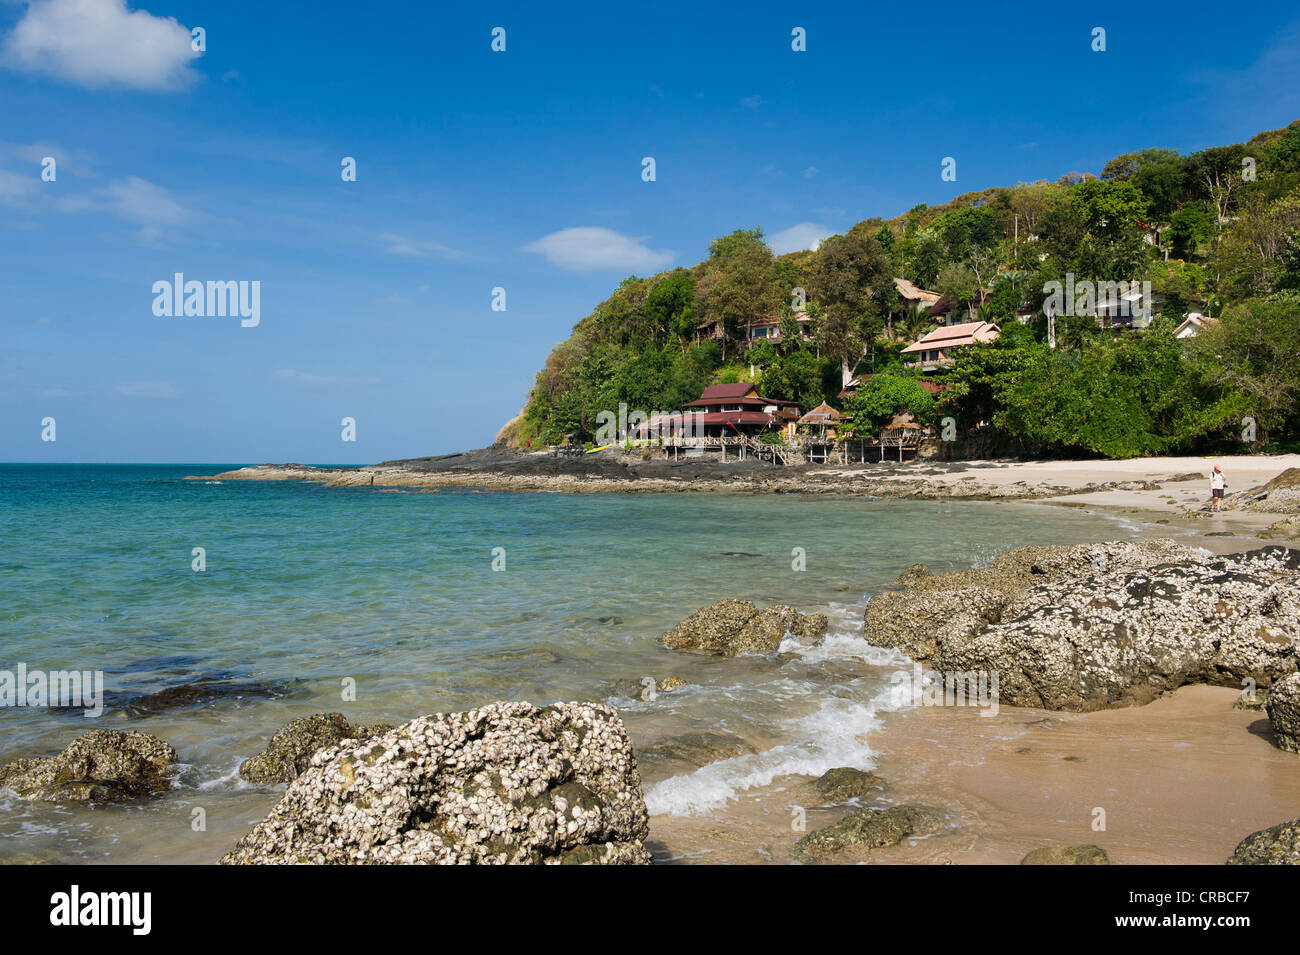 Costa, spiaggia della Baia di bambù, Ko Lanta island, Krabi, Thailandia, Sud-est asiatico Foto Stock